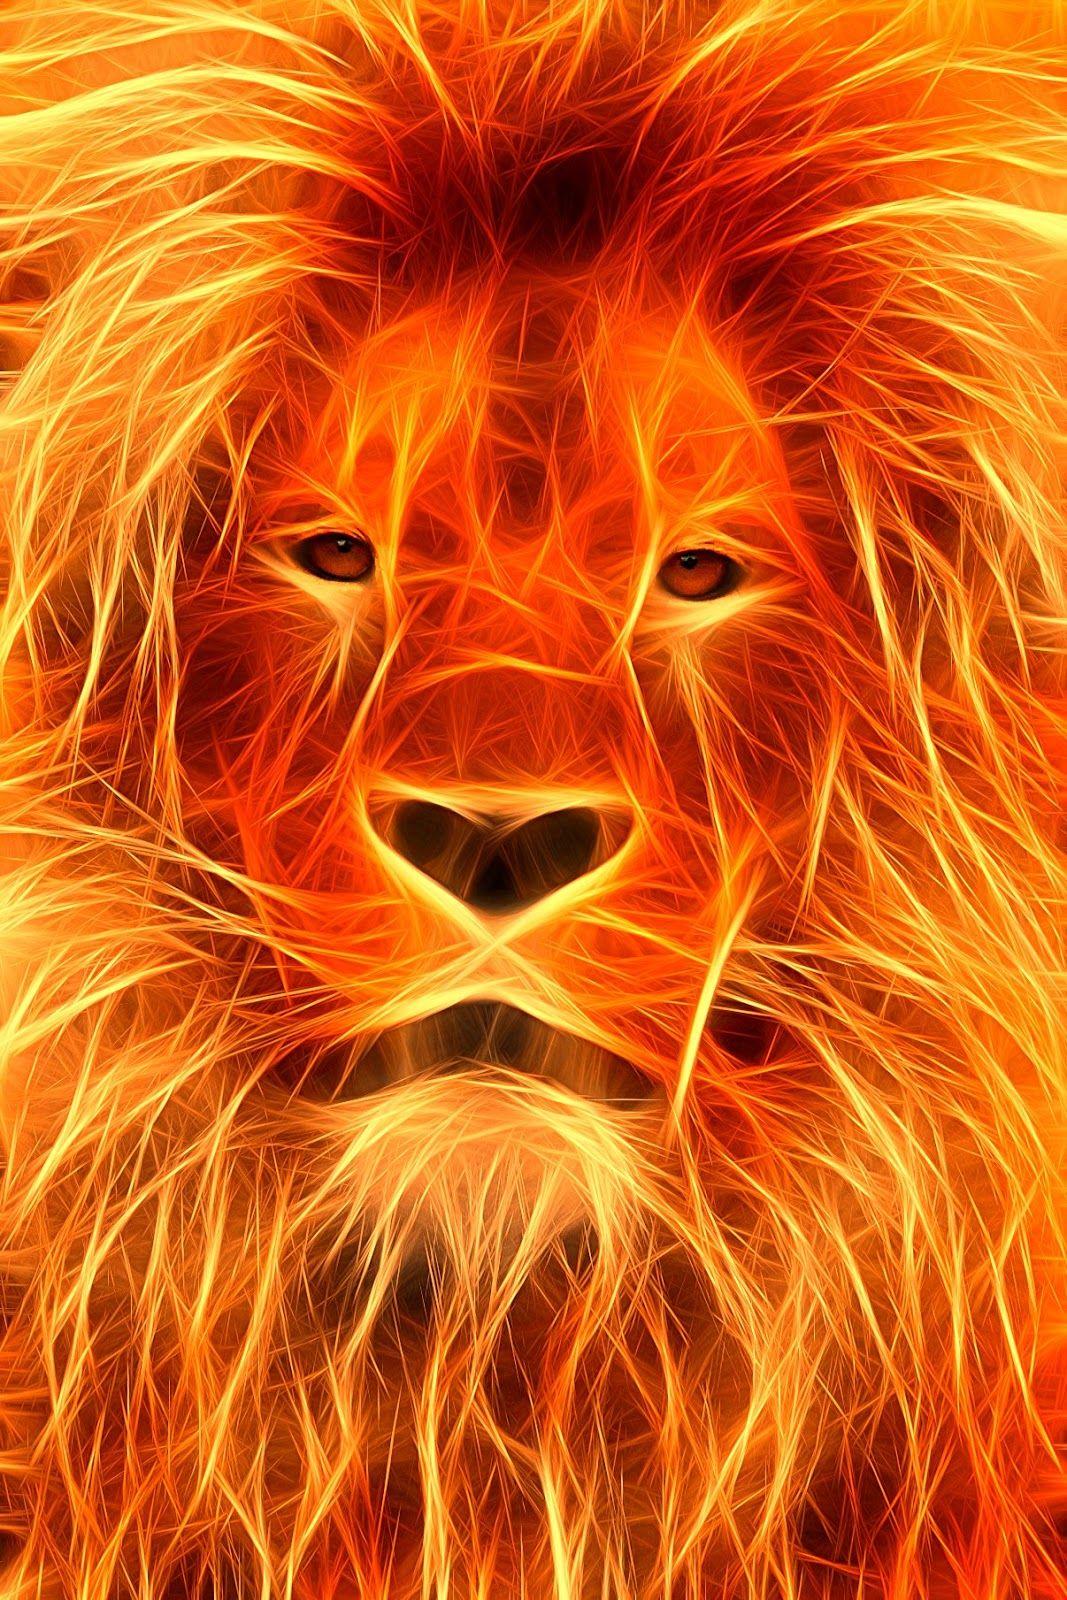 A beautiful lion fire image. Fire lion, Lion image, Lion wallpaper